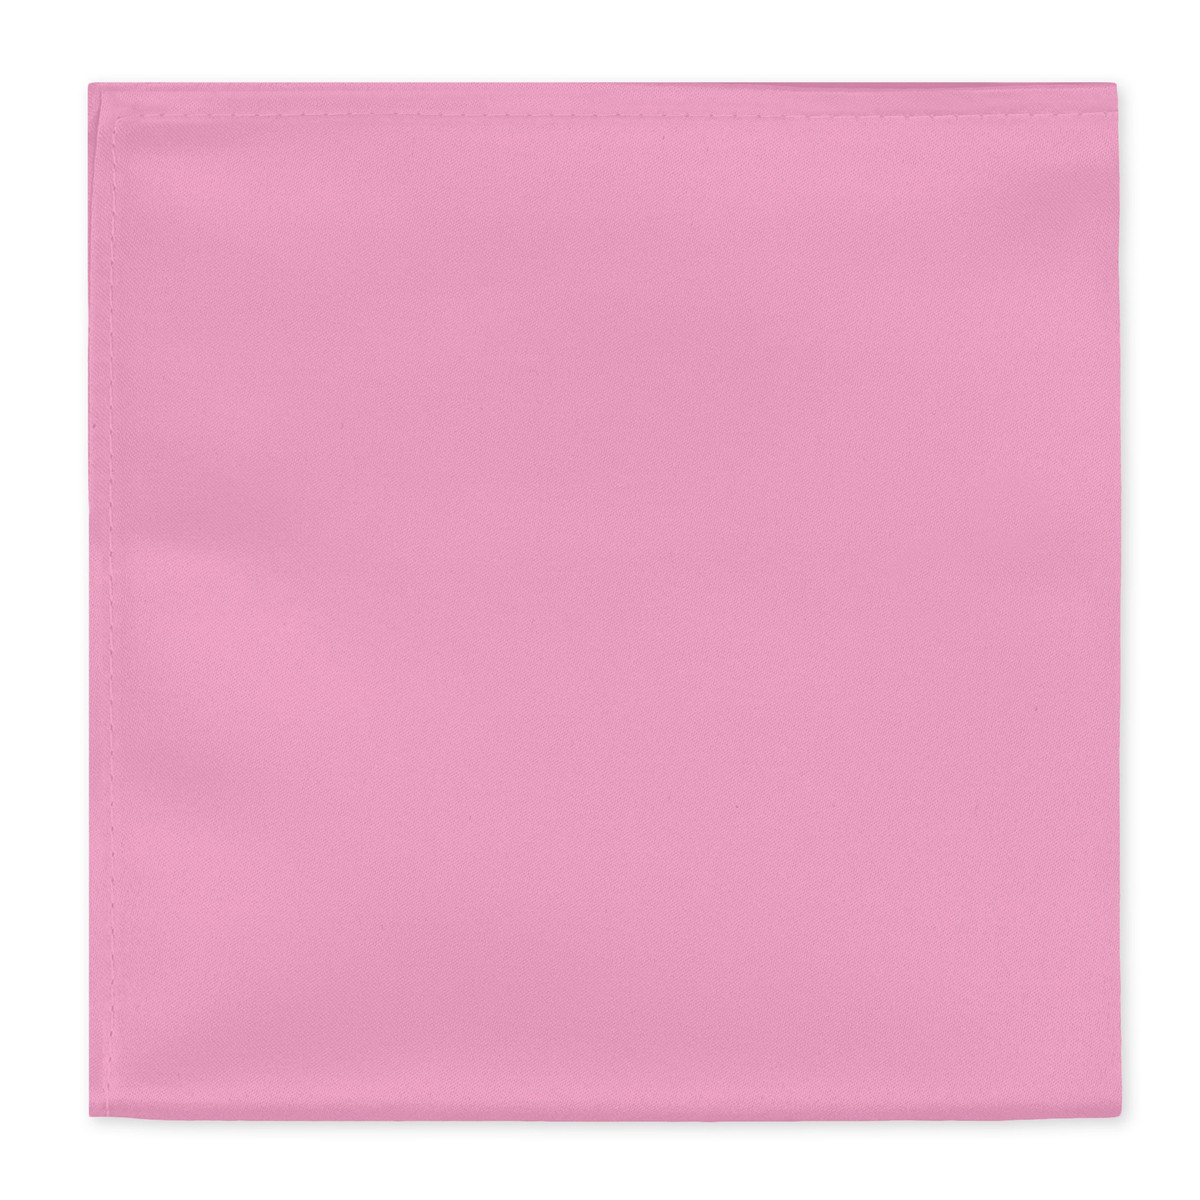 Men's Pocket Square Solid Color  - Carnation